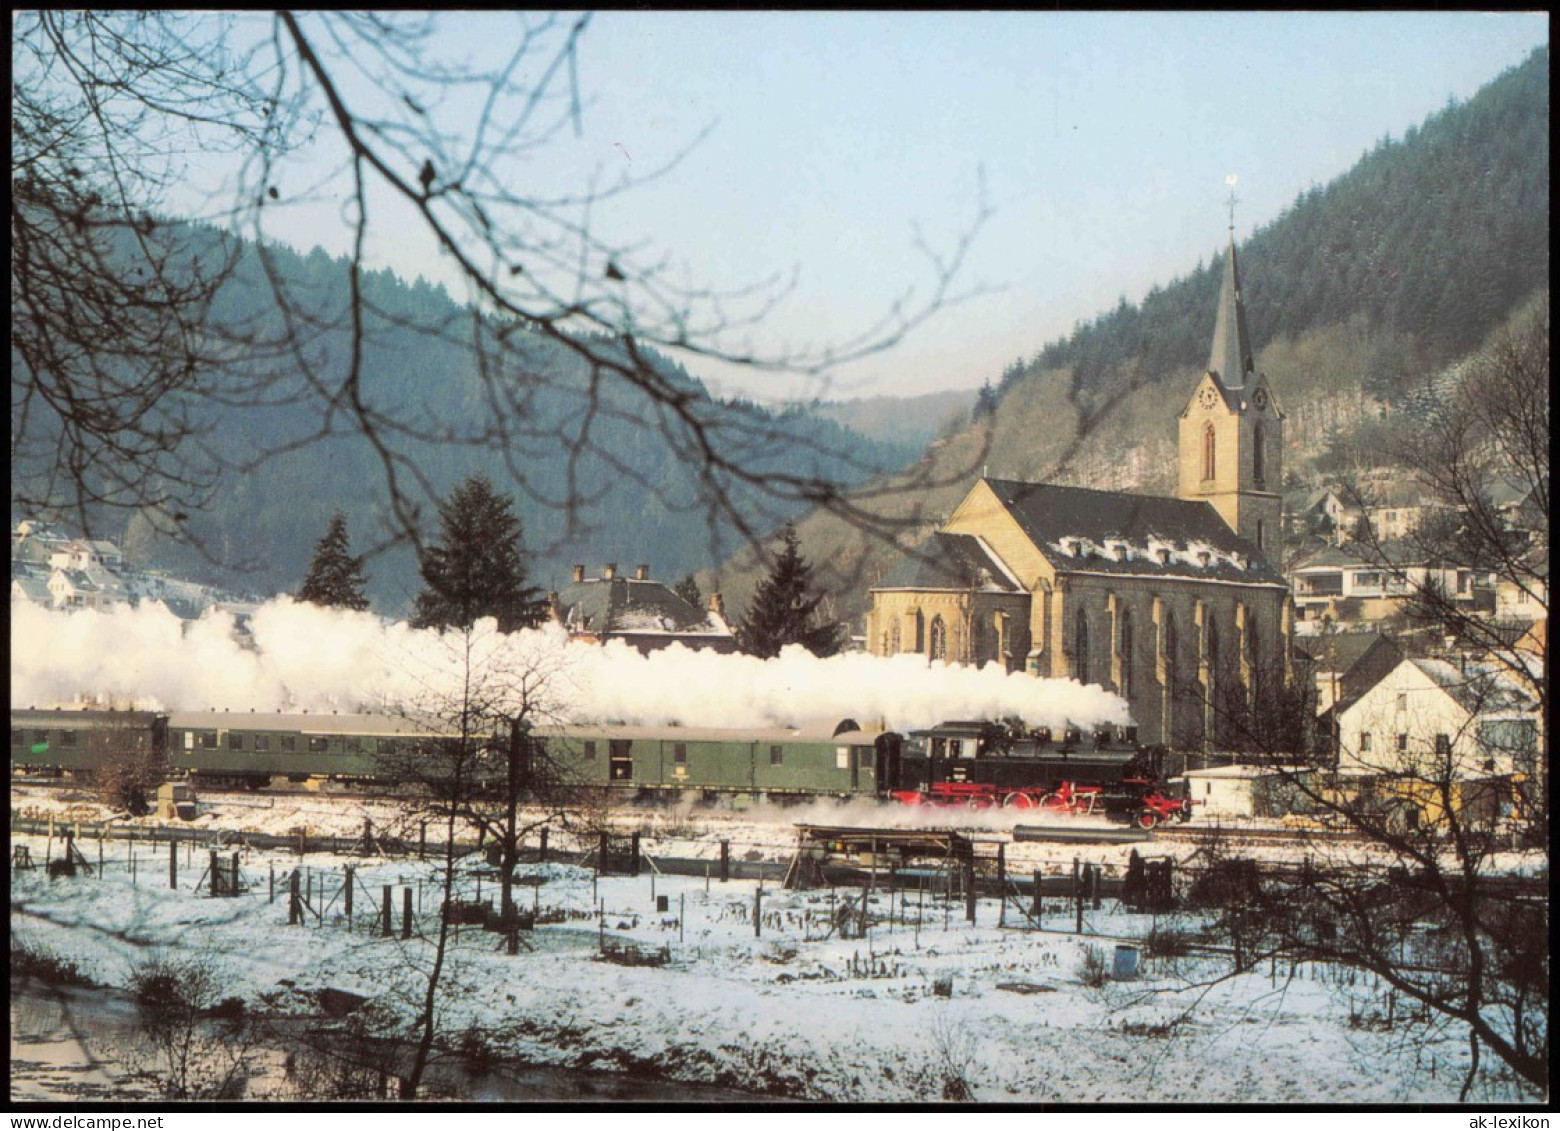 Verkehr & Eisenbahn Motivkarte Dampflokomotive In Der Eifel 1980 - Trains